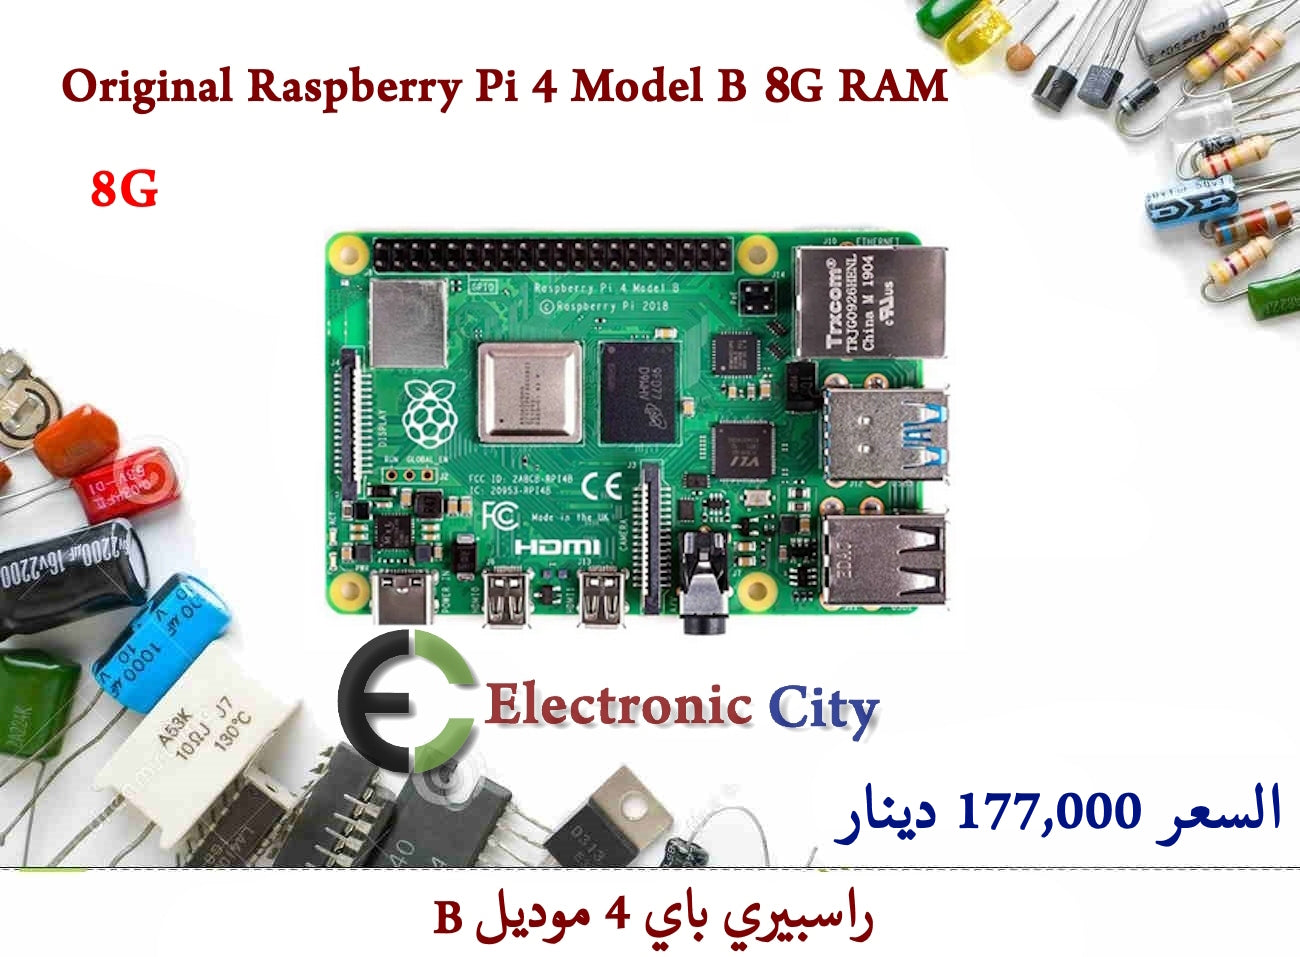 Original Raspberry Pi 4 Model B 8G RAM